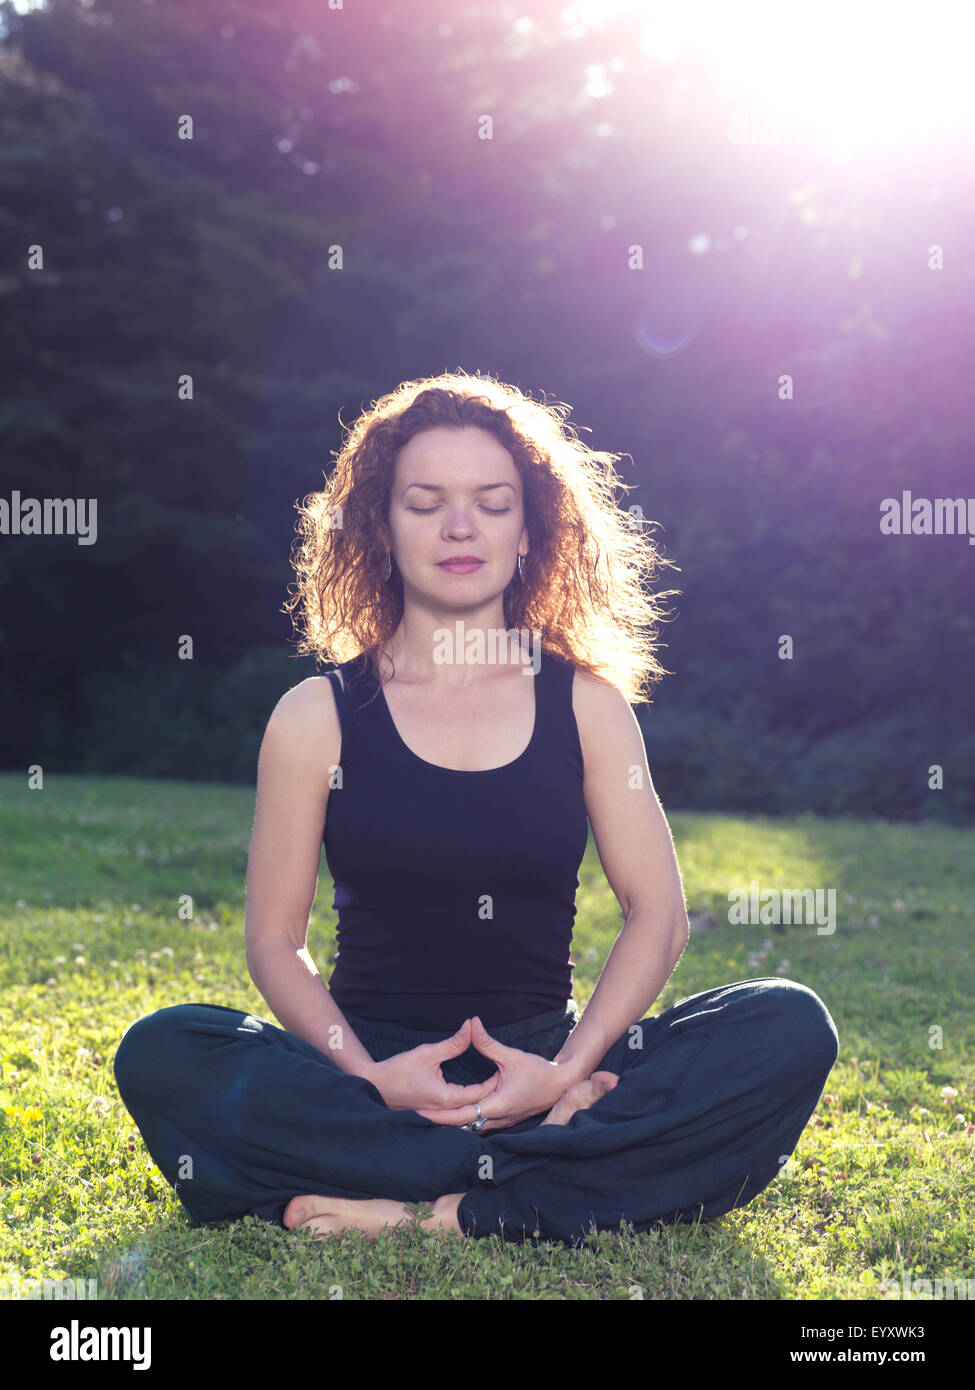 Führerschein erhältlich unter MaximImages.com - Frau meditiert in der Natur, sitzt auf Gras im Sonnenlicht Stockfoto